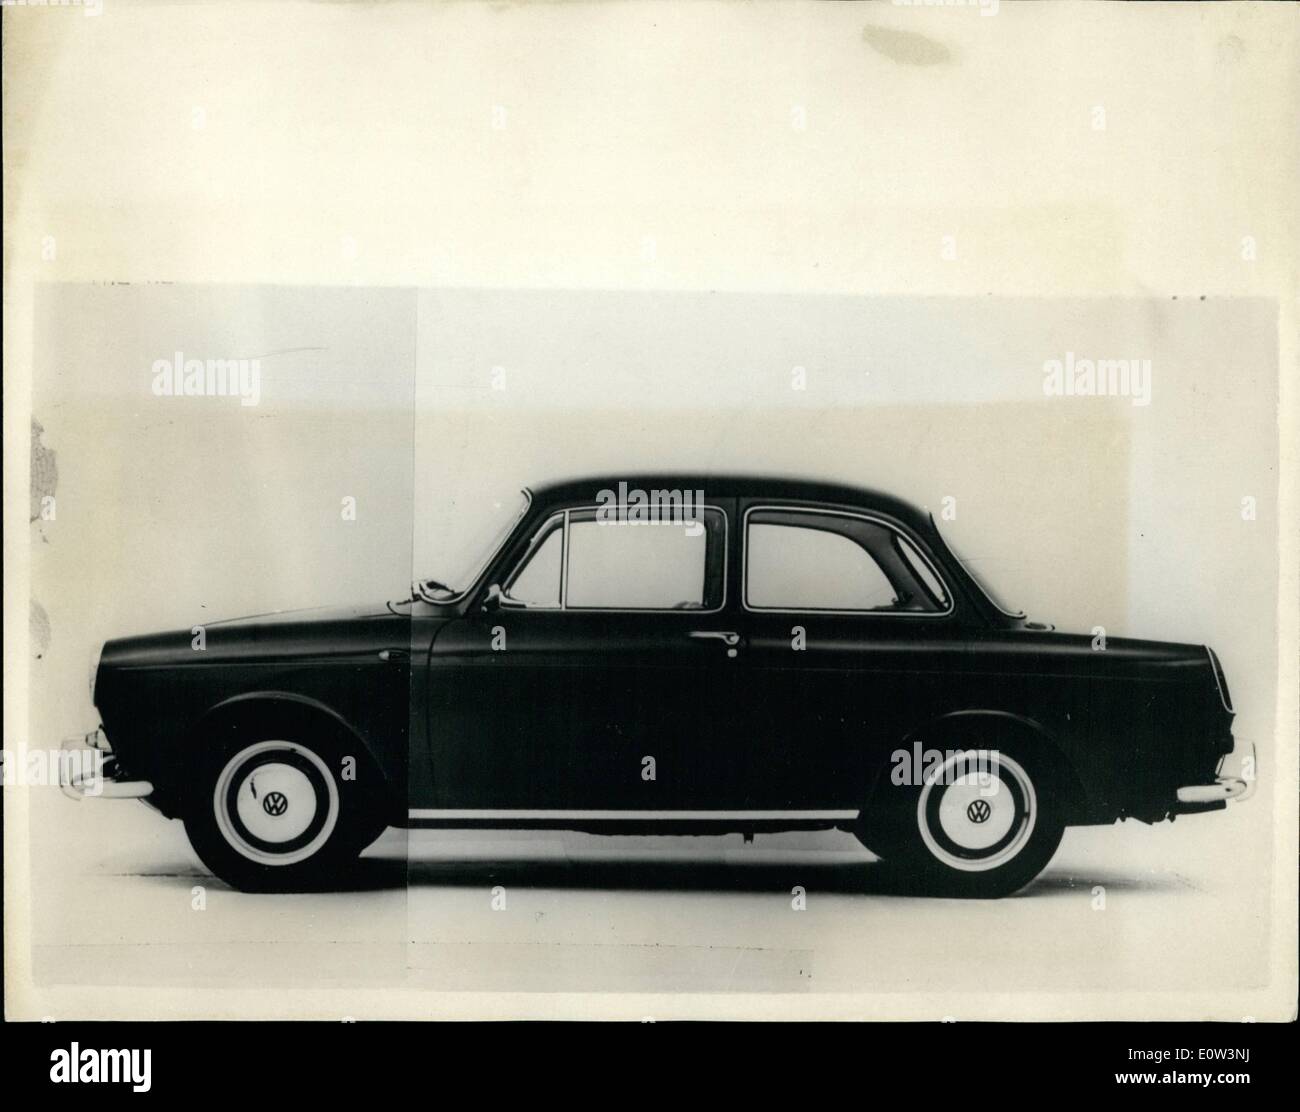 Mar 03, 1961 - PRESENTAZIONE DEL NUOVO 80 M.P.H. VOLKSWAGEN..PRIMO NUOVO DESIGN dalla fabbrica per più di vent'anni. Il nuovo 80 m.p.h Volkswagen - primo davvero fresca modello per essere prodotta presso la factory tedesca più di venti anni fa - è stato visto oggi per la prima volta. Il motore posteriore è più potente di 1 ½ litro di unità.. La nuova vettura ha un interamente 'Nuovo Look" per la Volkswagen - per esso è in gran parte le stesse linee di popolare britannica auto. Keystone Mostra fotografica di:- visualizzare di nuovo 1 ½ litro di Volkswagen - al prezzo di 6400 DM. - Come si è visto a Francoforte oggi. Foto Stock